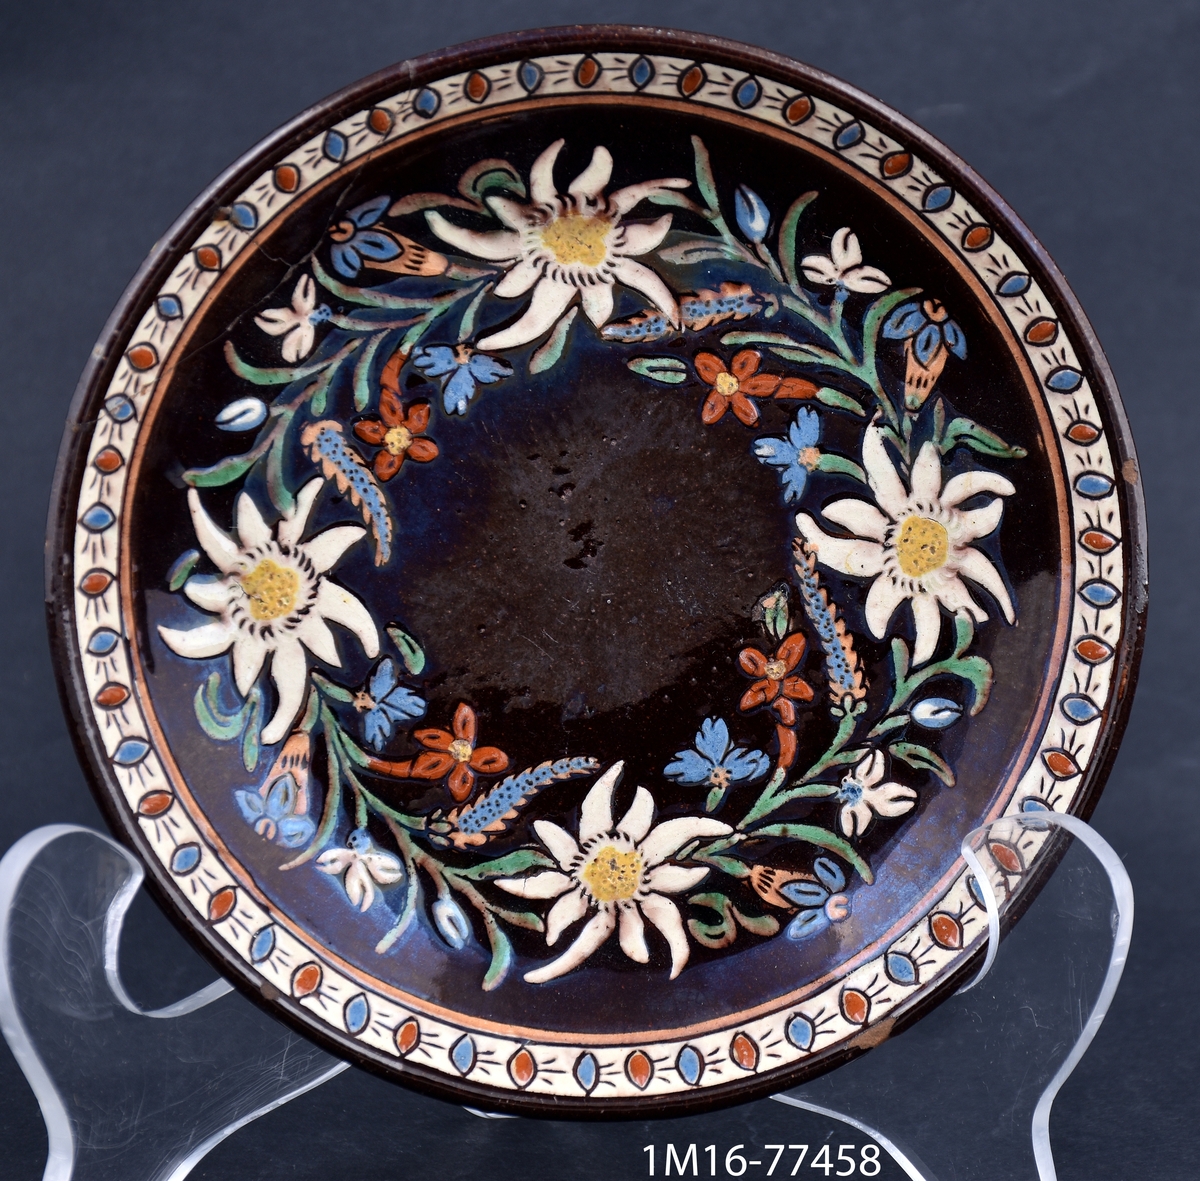 Fat (till kaffekopp) i lergods med detaljerad målad och ristad dekor föreställande blommor, bland annat edelweiss. Tillverkare är manufaktur Josef Wanzenried, verksam i kommunen Steffisburg i distriktet Thoune i Schweiz.